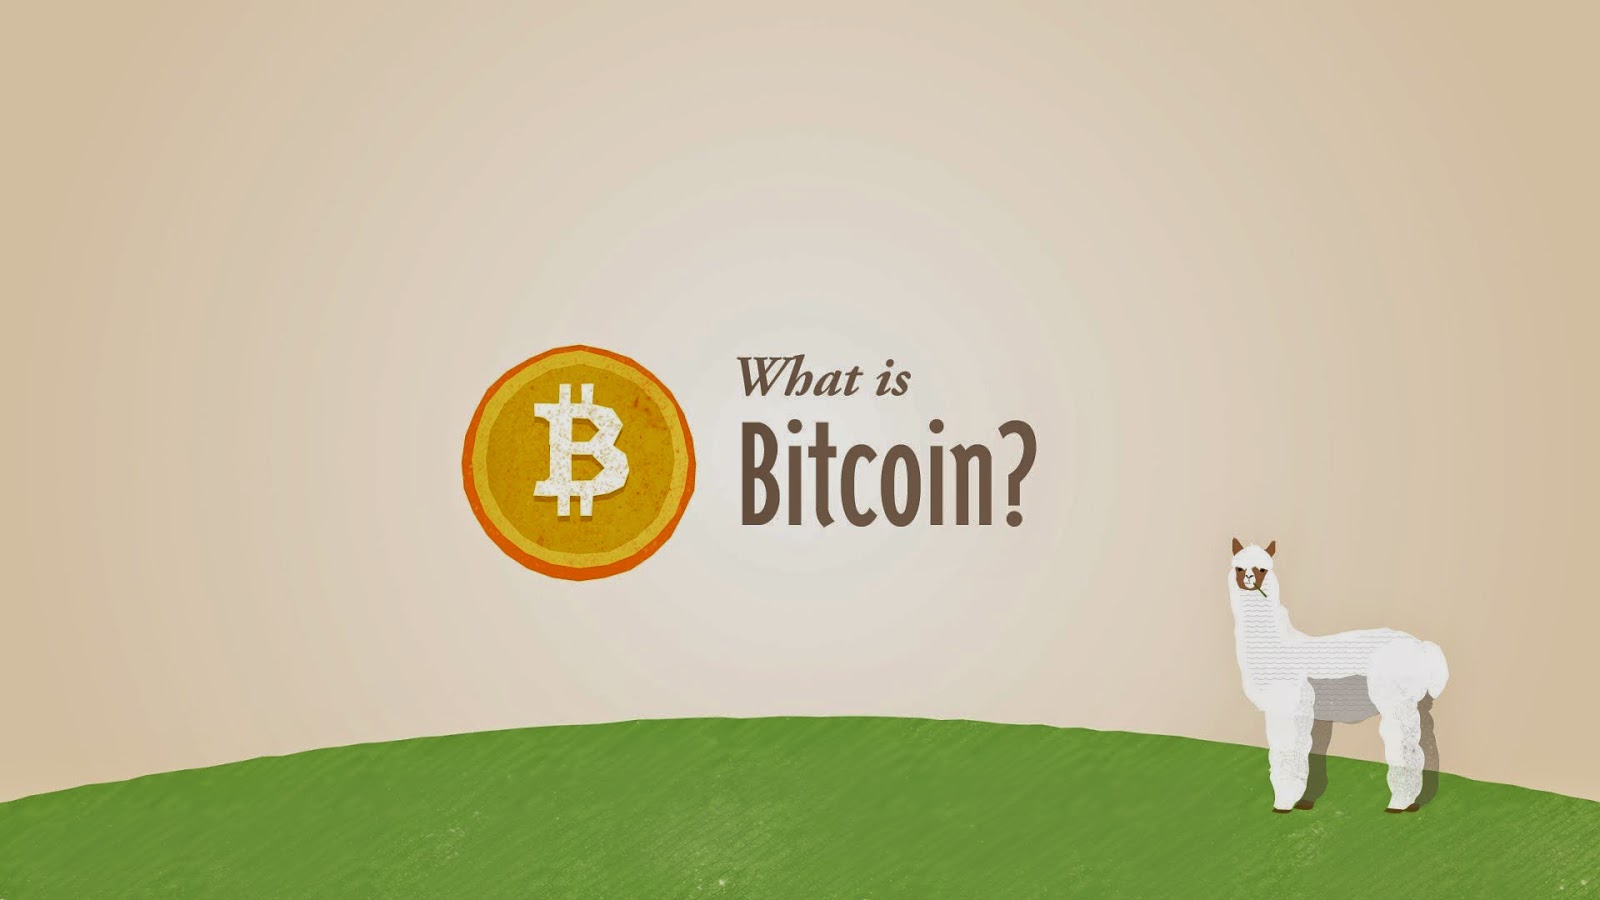 Bitcoin Phenomenon: A Bright Future or a Growing Bubble?